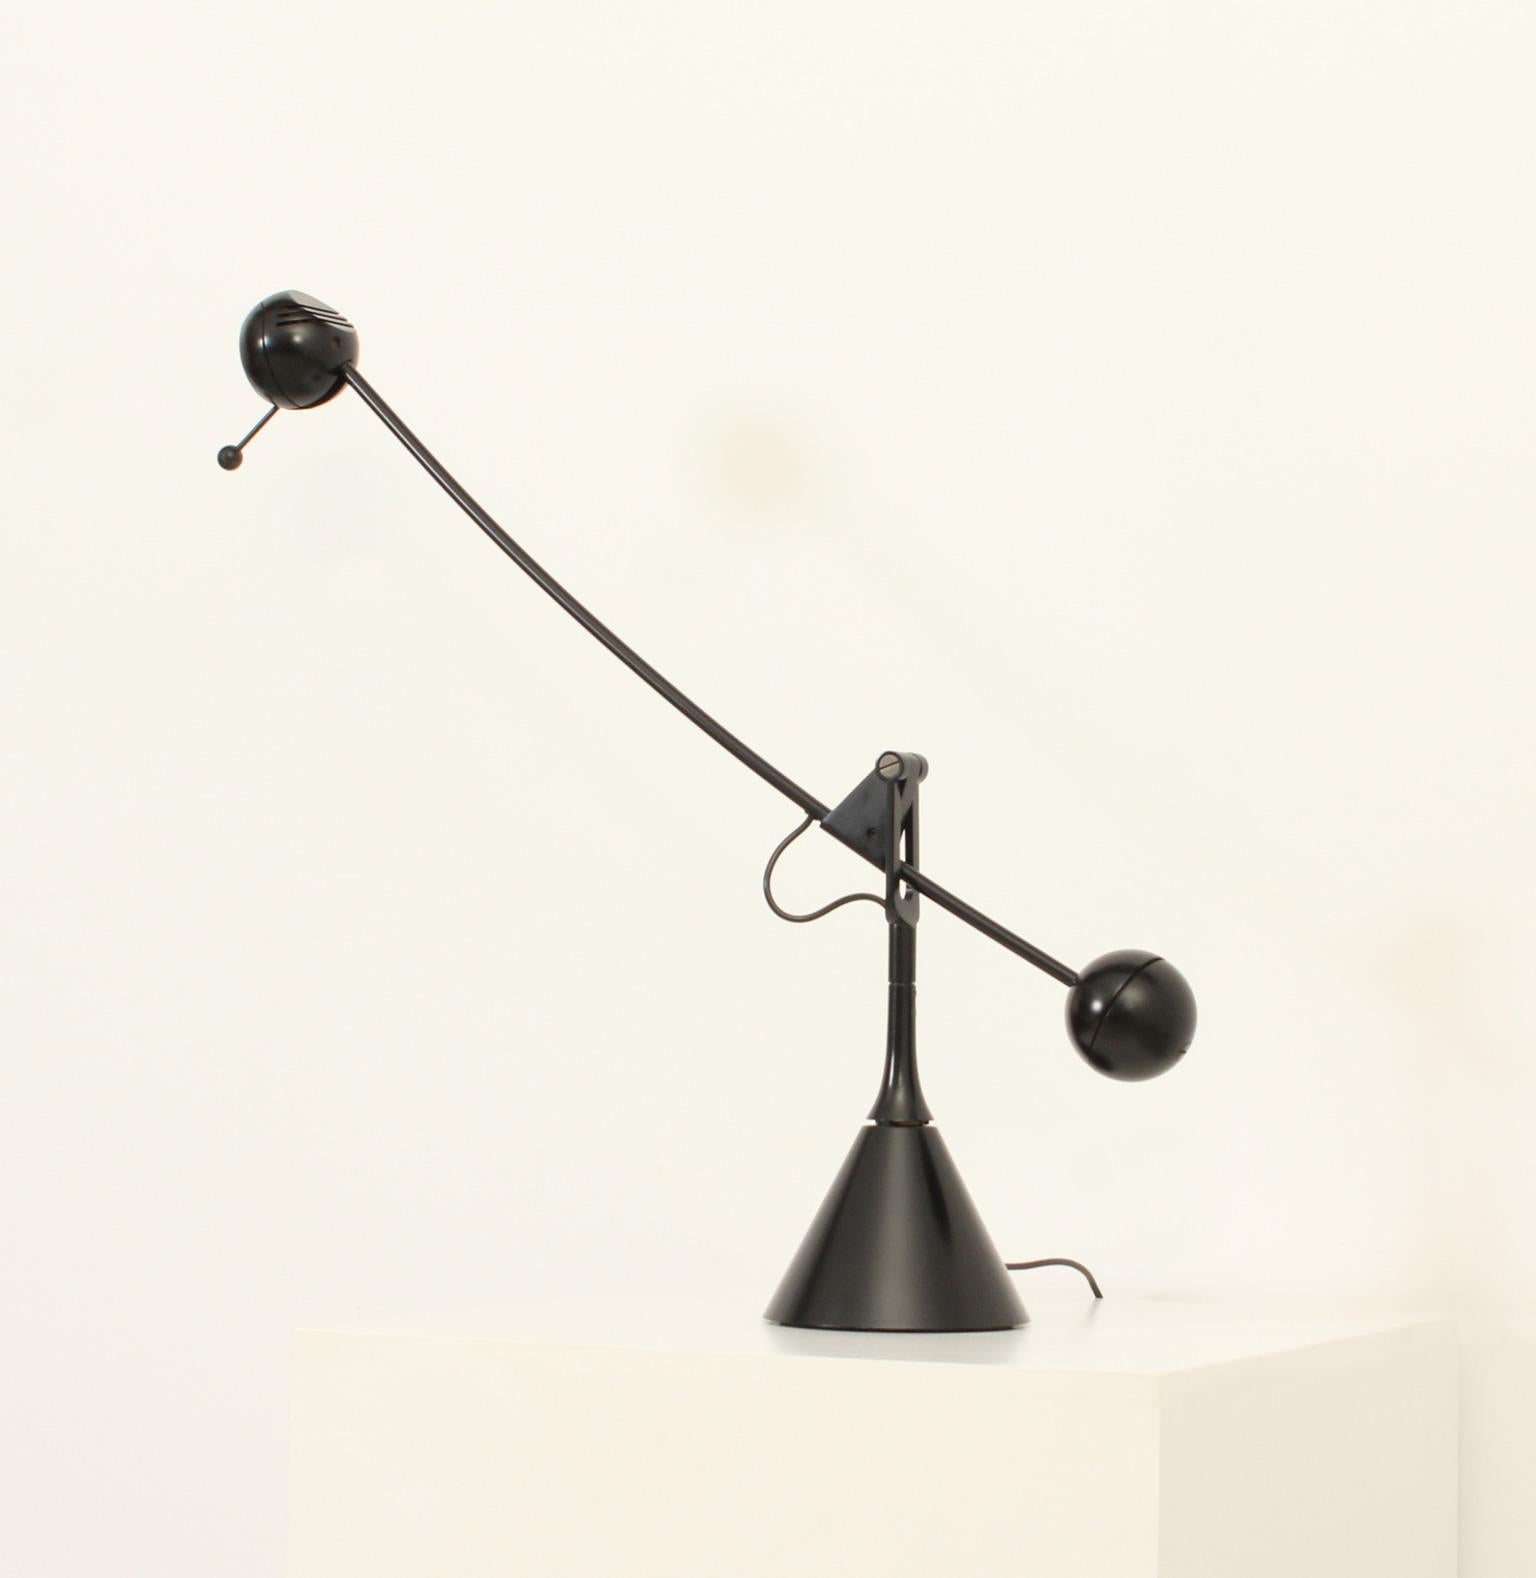 Calder Tischleuchte, 1975 von Enric Franch für Metalarte, Spanien, entworfen. Skulpturale Tischleuchte mit einem Gegengewicht, das sich in jede Richtung bewegen kann. Schwarz lackiertes Metall mit Lichtstärkeregler.